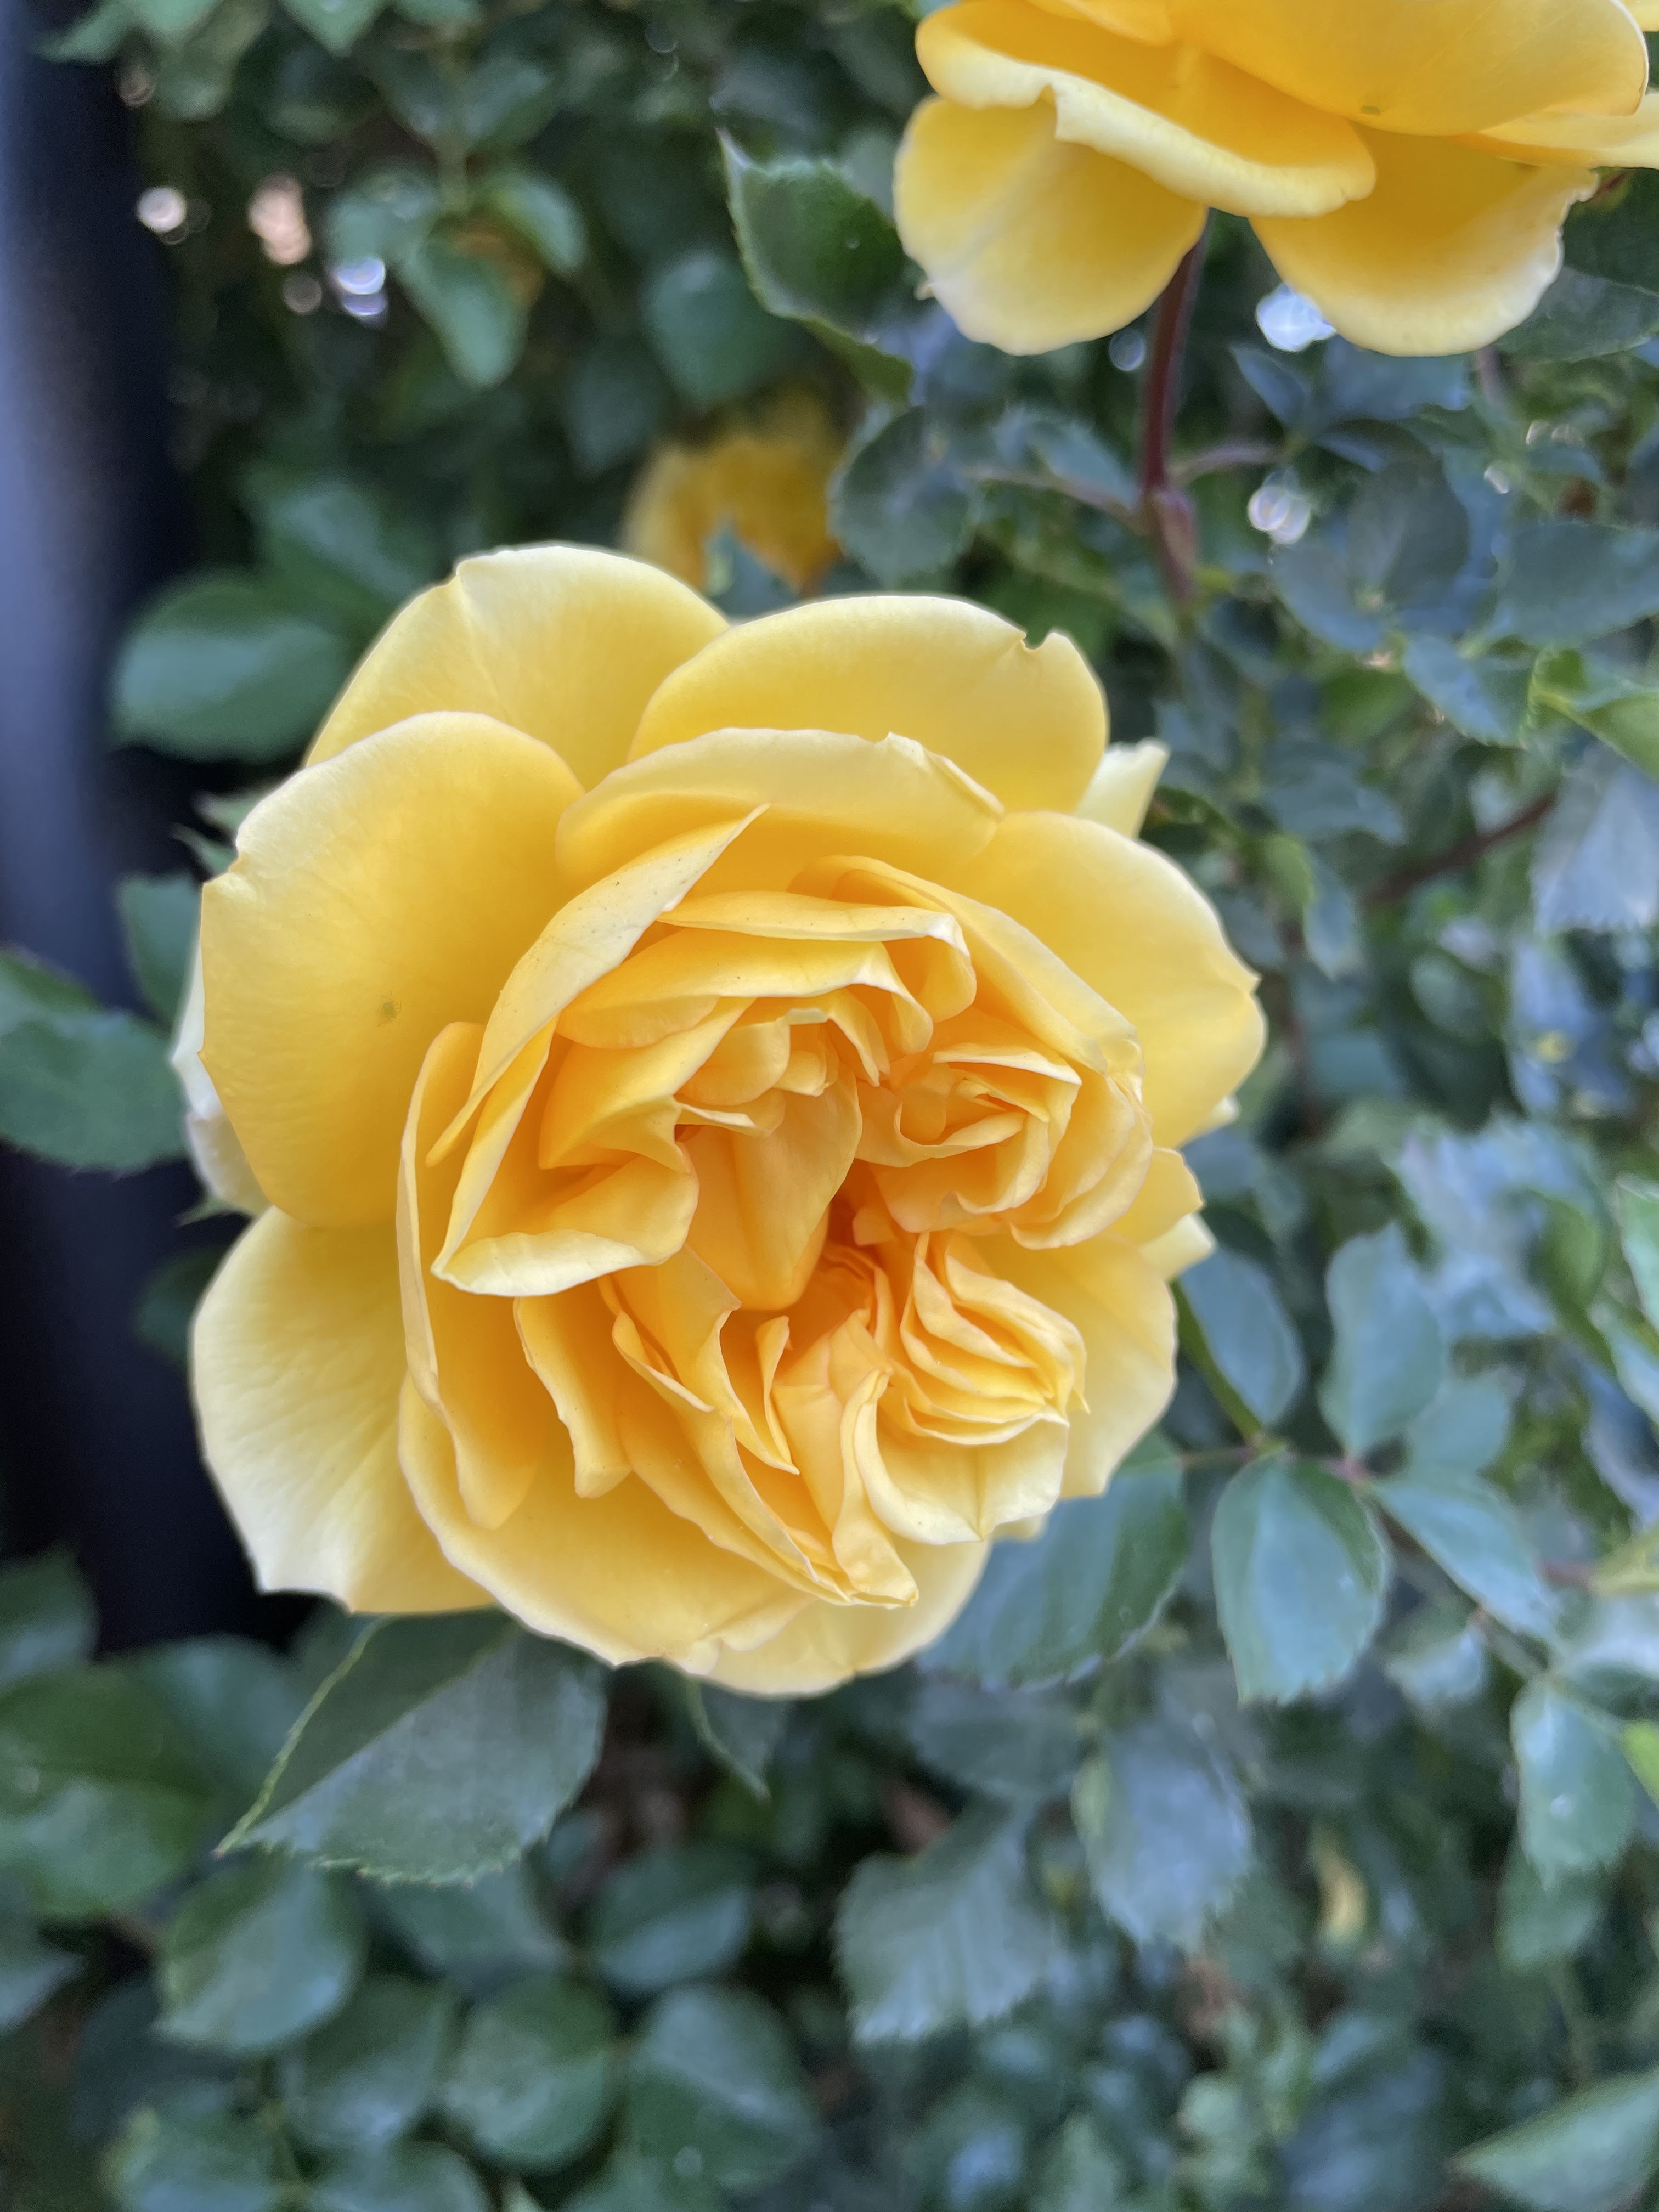 Golden Celebration Roses là loại hoa hồng độc đáo, có màu vàng óng ánh rất đẹp mắt. Hãy cùng thưởng thức những bức hình với loài hoa hồng này để đón nhận những cảm xúc tươi mới trong cuộc sống của bạn.